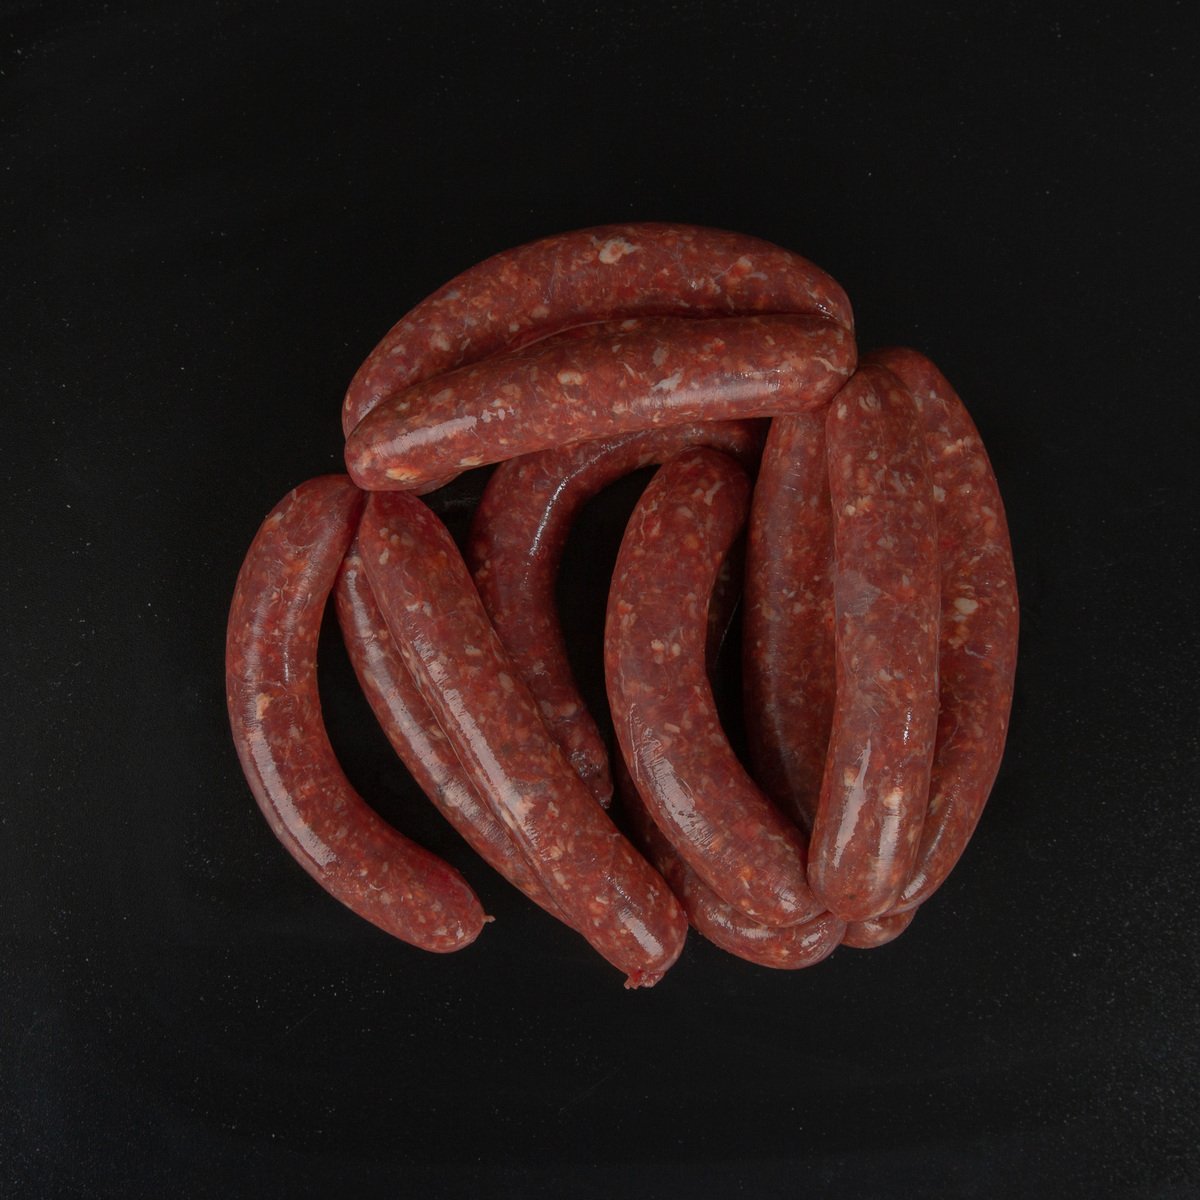 Buy Brazilian Beef Sausage 300 g Online at Best Price | Value Added (Meat) | Lulu UAE in UAE